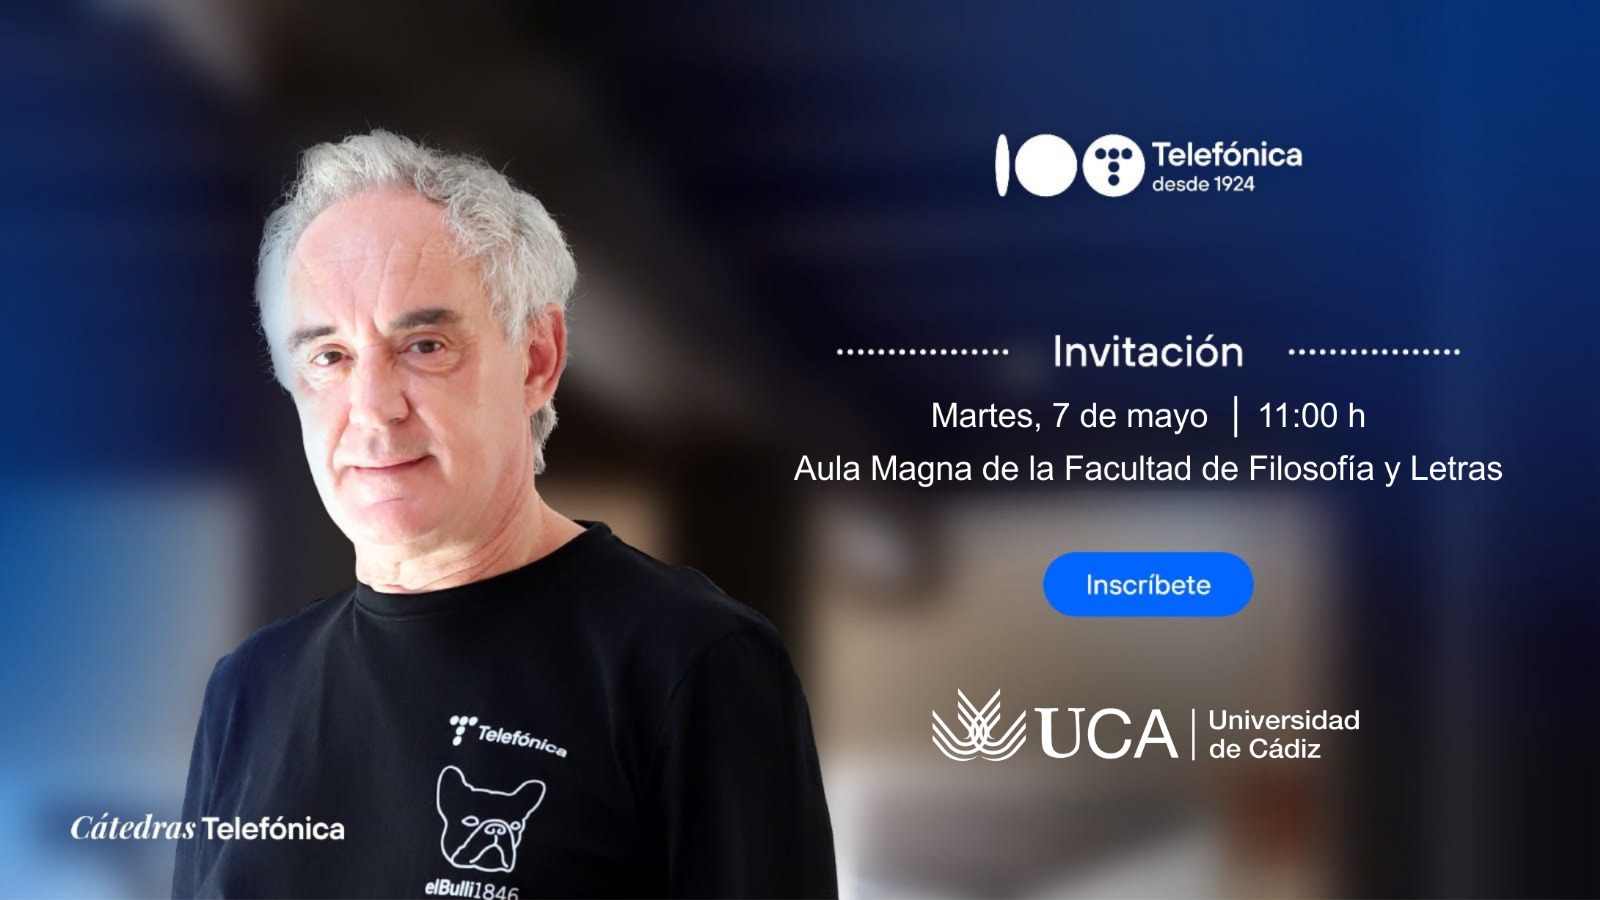 Imaginémonos sin límites, con Ferran Adrià en la UCA